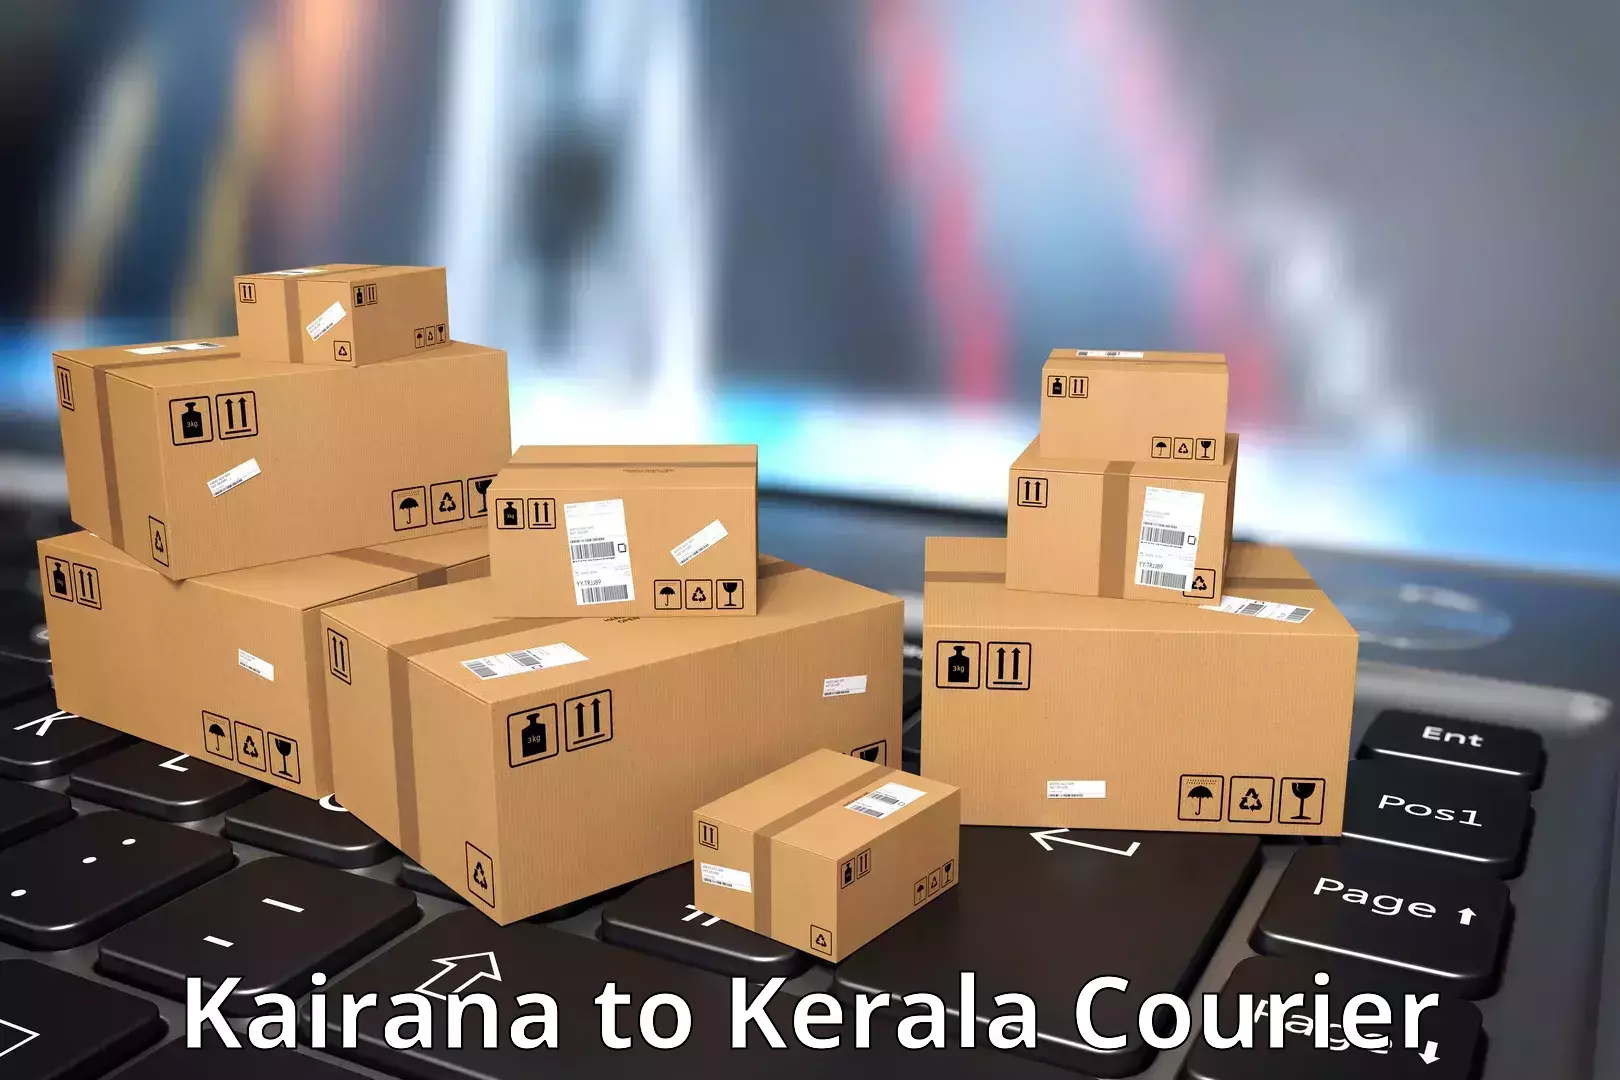 Courier service innovation Kairana to Kuttikol